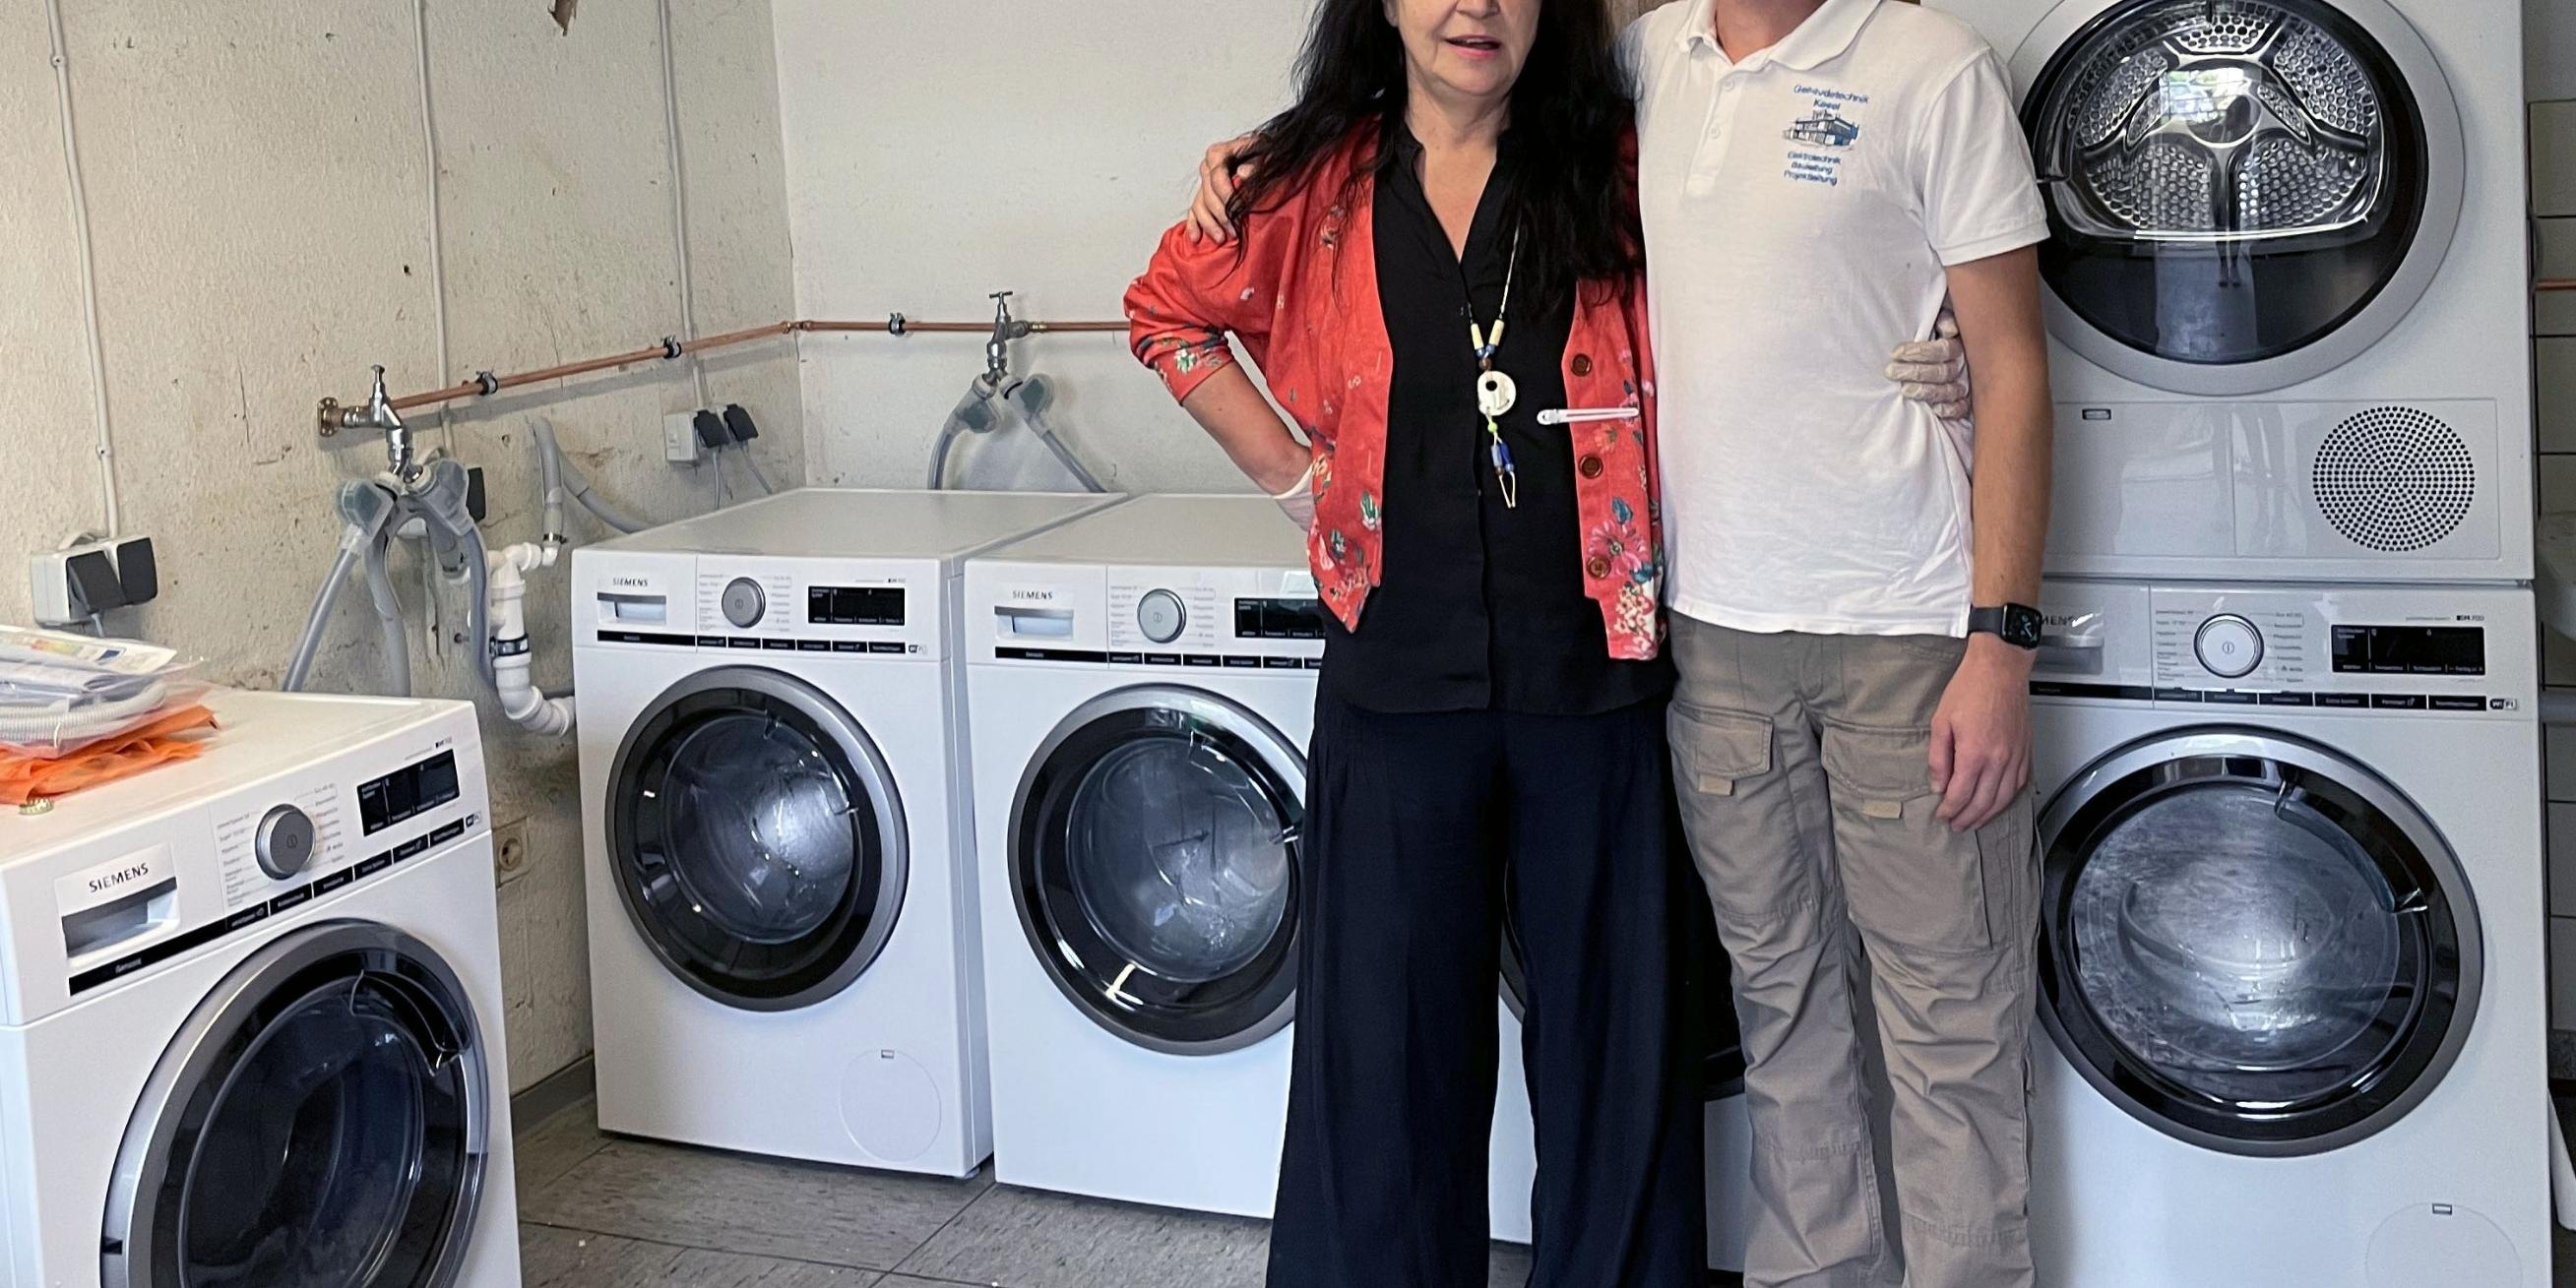 Die Leiterin des HoT, Petra Klein, mit einem Elektrikermeister aus dem brandenburgischen Senzech. Die Waschmaschinen und ihr Anschluss waren eine Spende. Für die Betroffenen aus dem Ahrtal wurde so im HoT ein Waschsalon eingerichtet, wo kostenlos gewaschen werden kann. (Foto: privat)